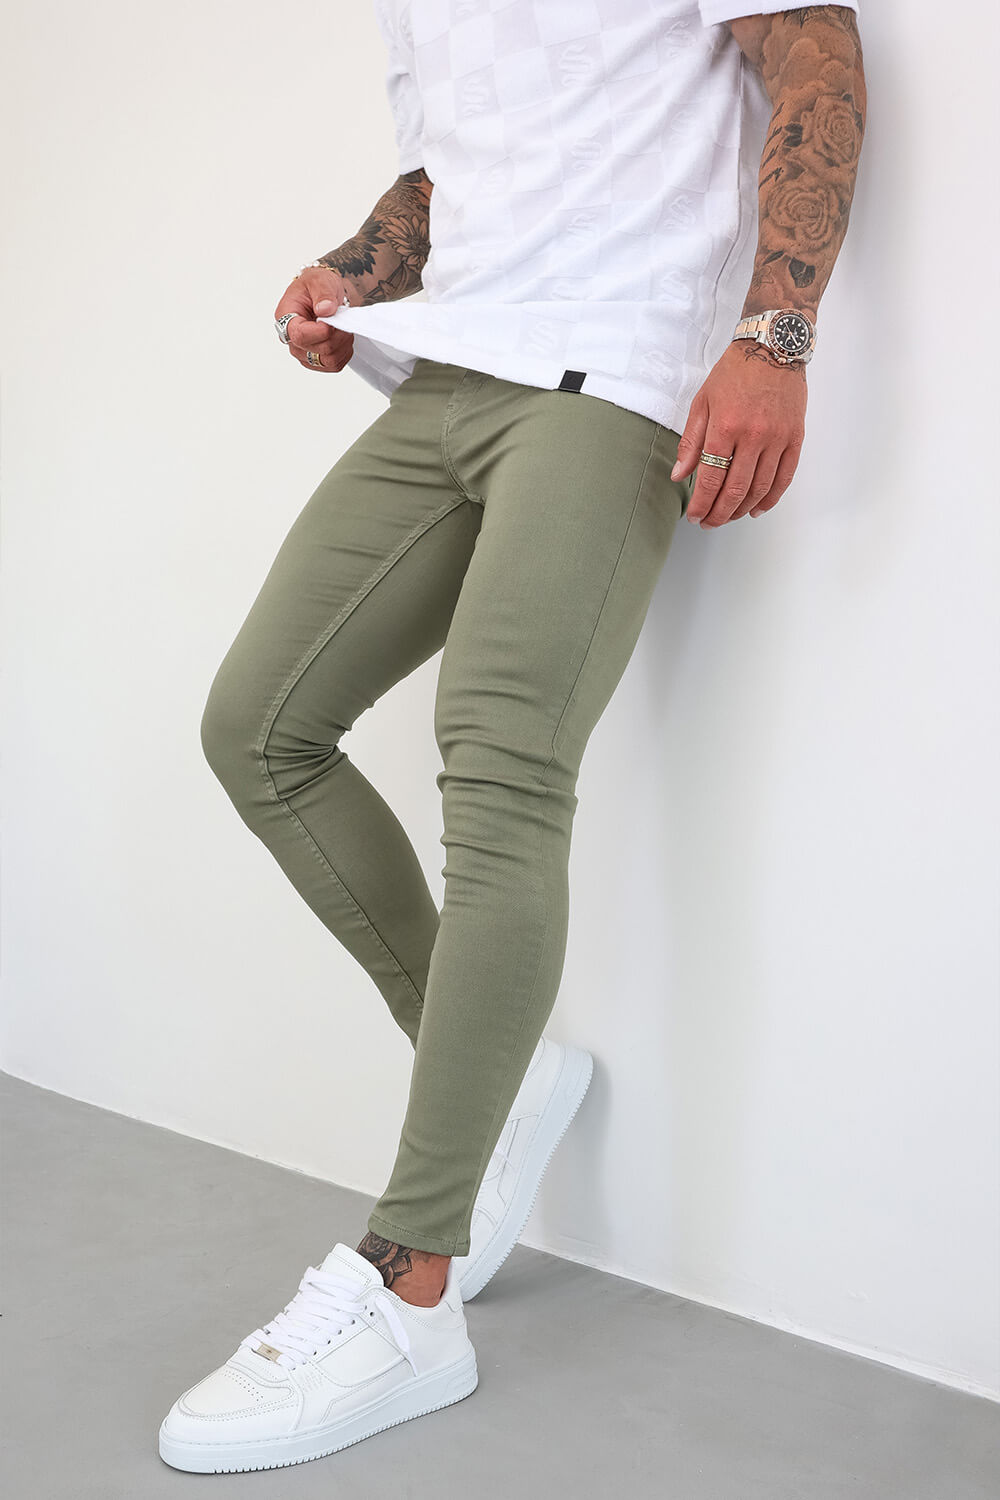 Men Cargo Combat Denim Trousers Skinny Jeans Casual Slim Fit Pants | Fruugo  NO